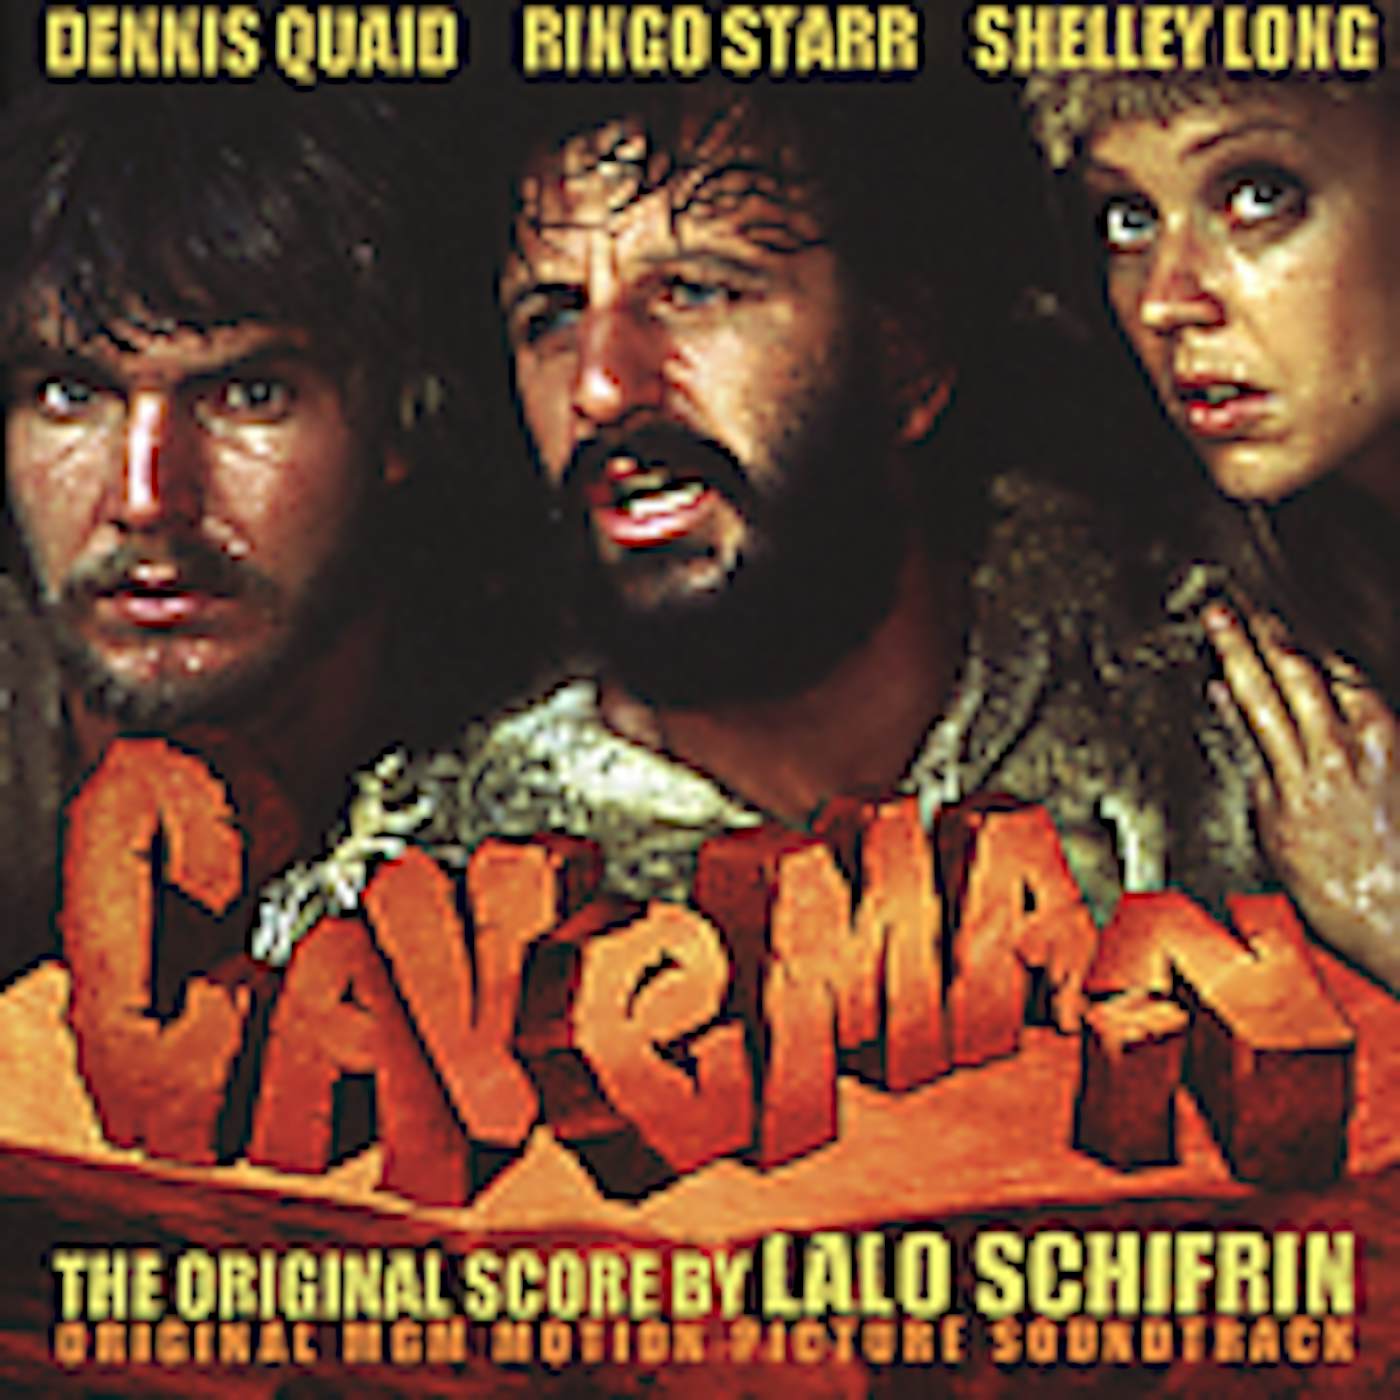 Lalo Schifrin CAVEMAN (SCORE) / Original Soundtrack CD